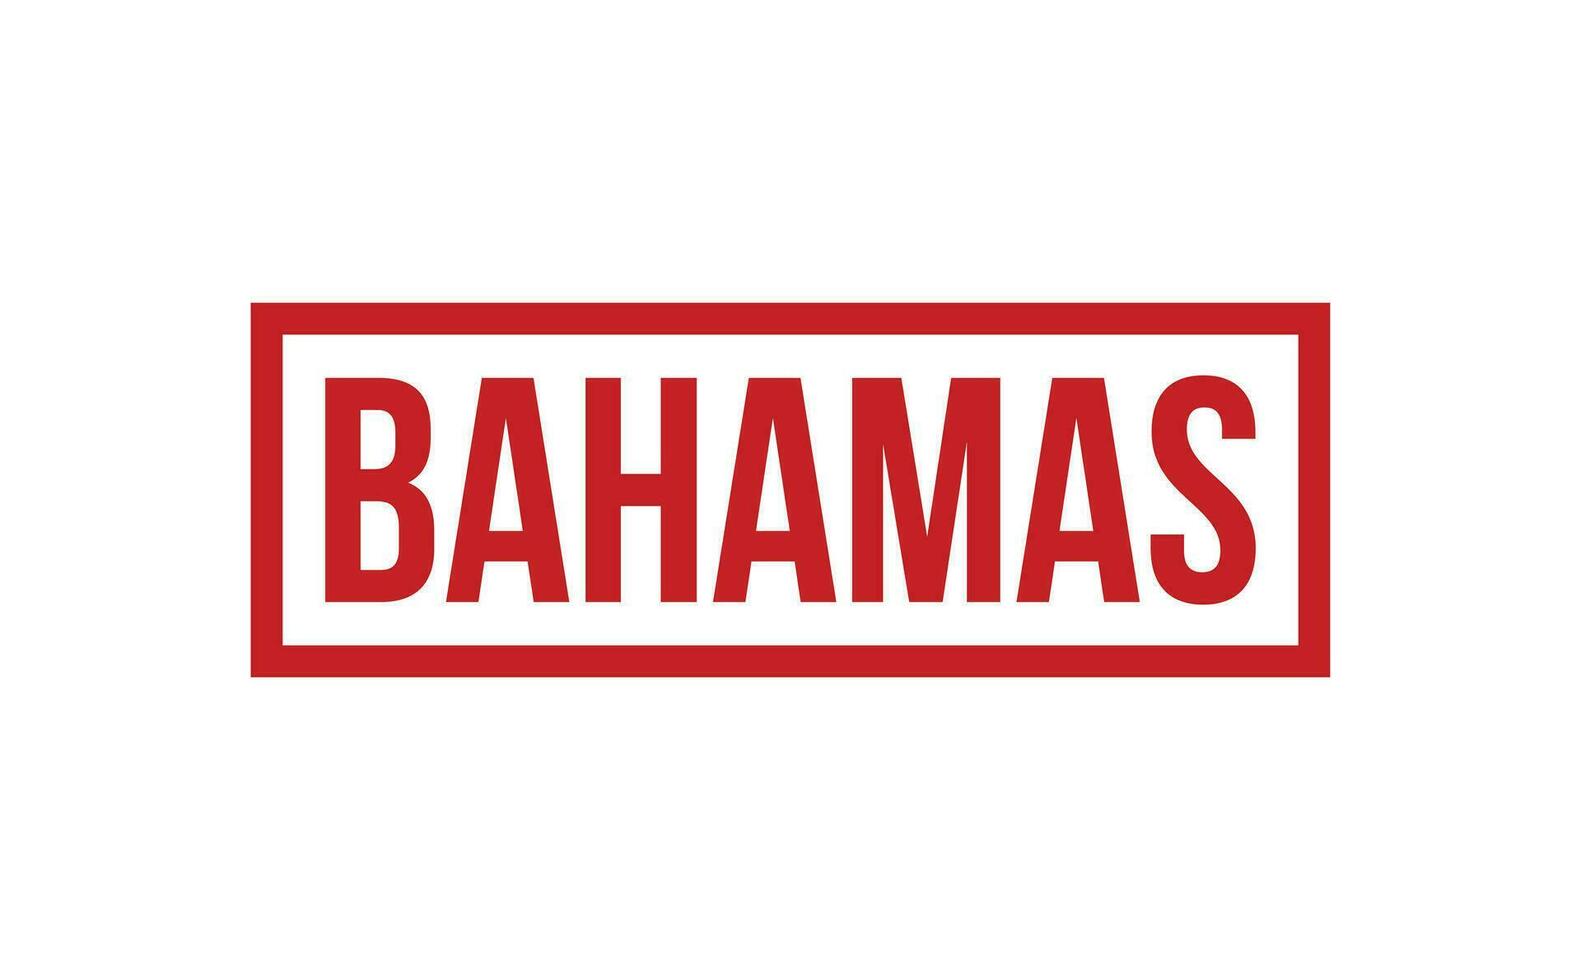 Bahamas caoutchouc timbre joint vecteur